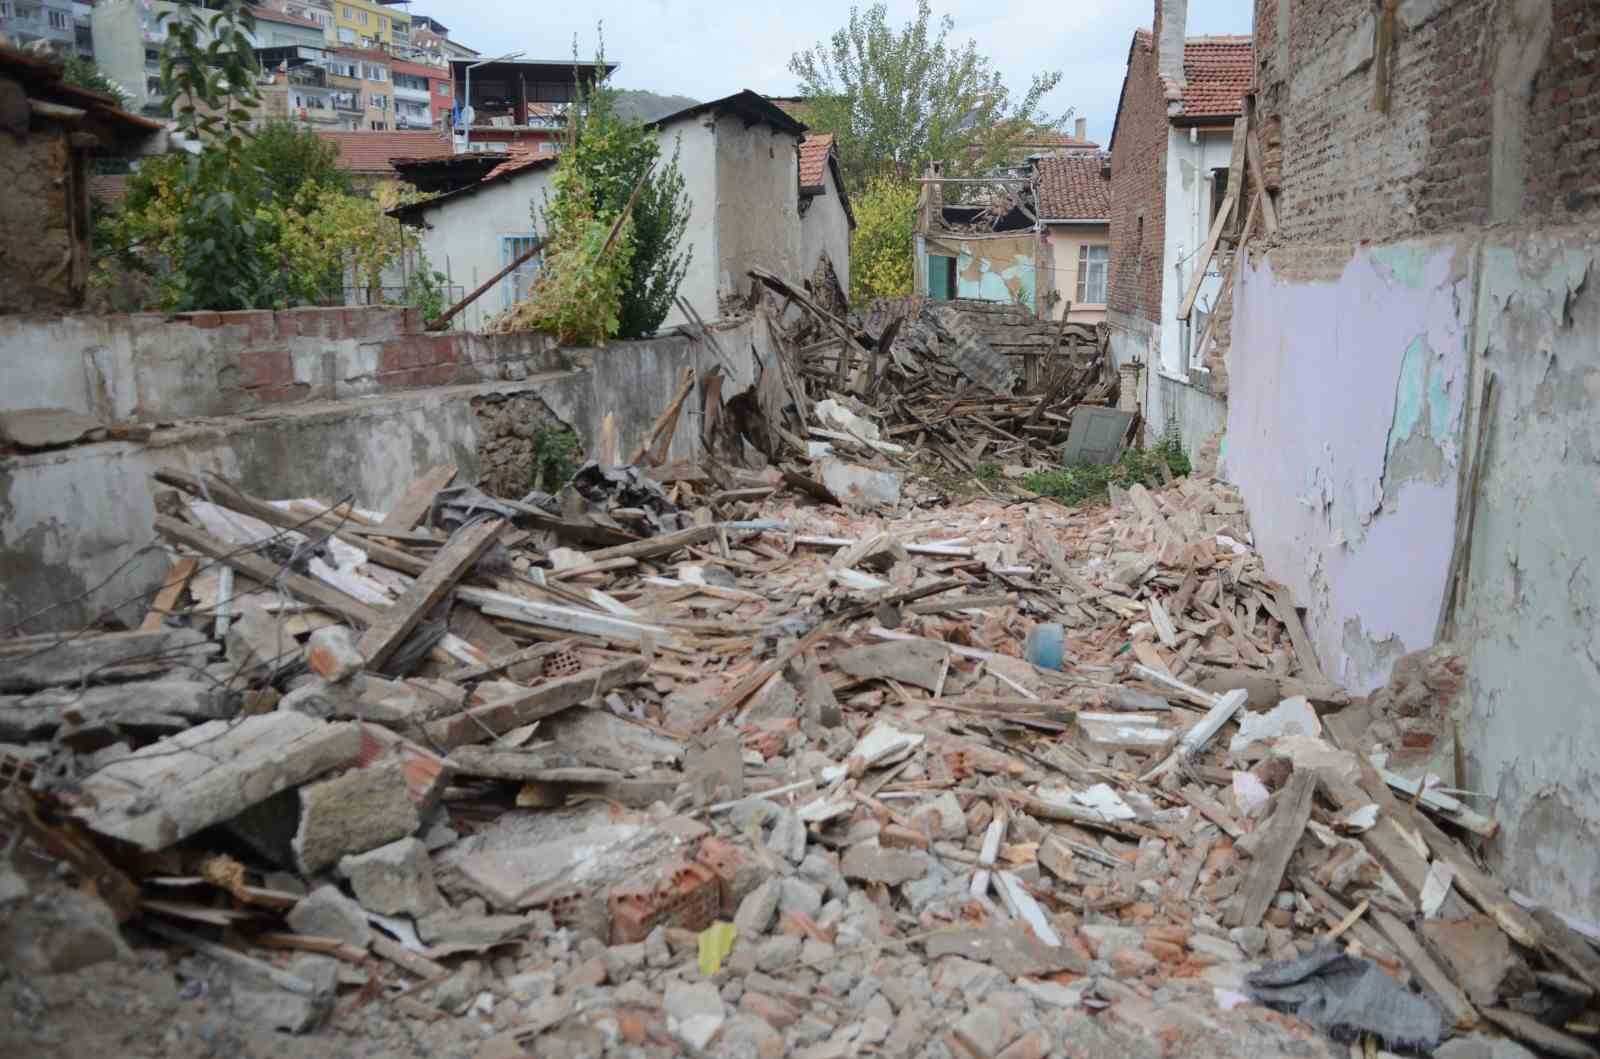 Osmangazi’de metruk binalar bir bir yıkılıyor